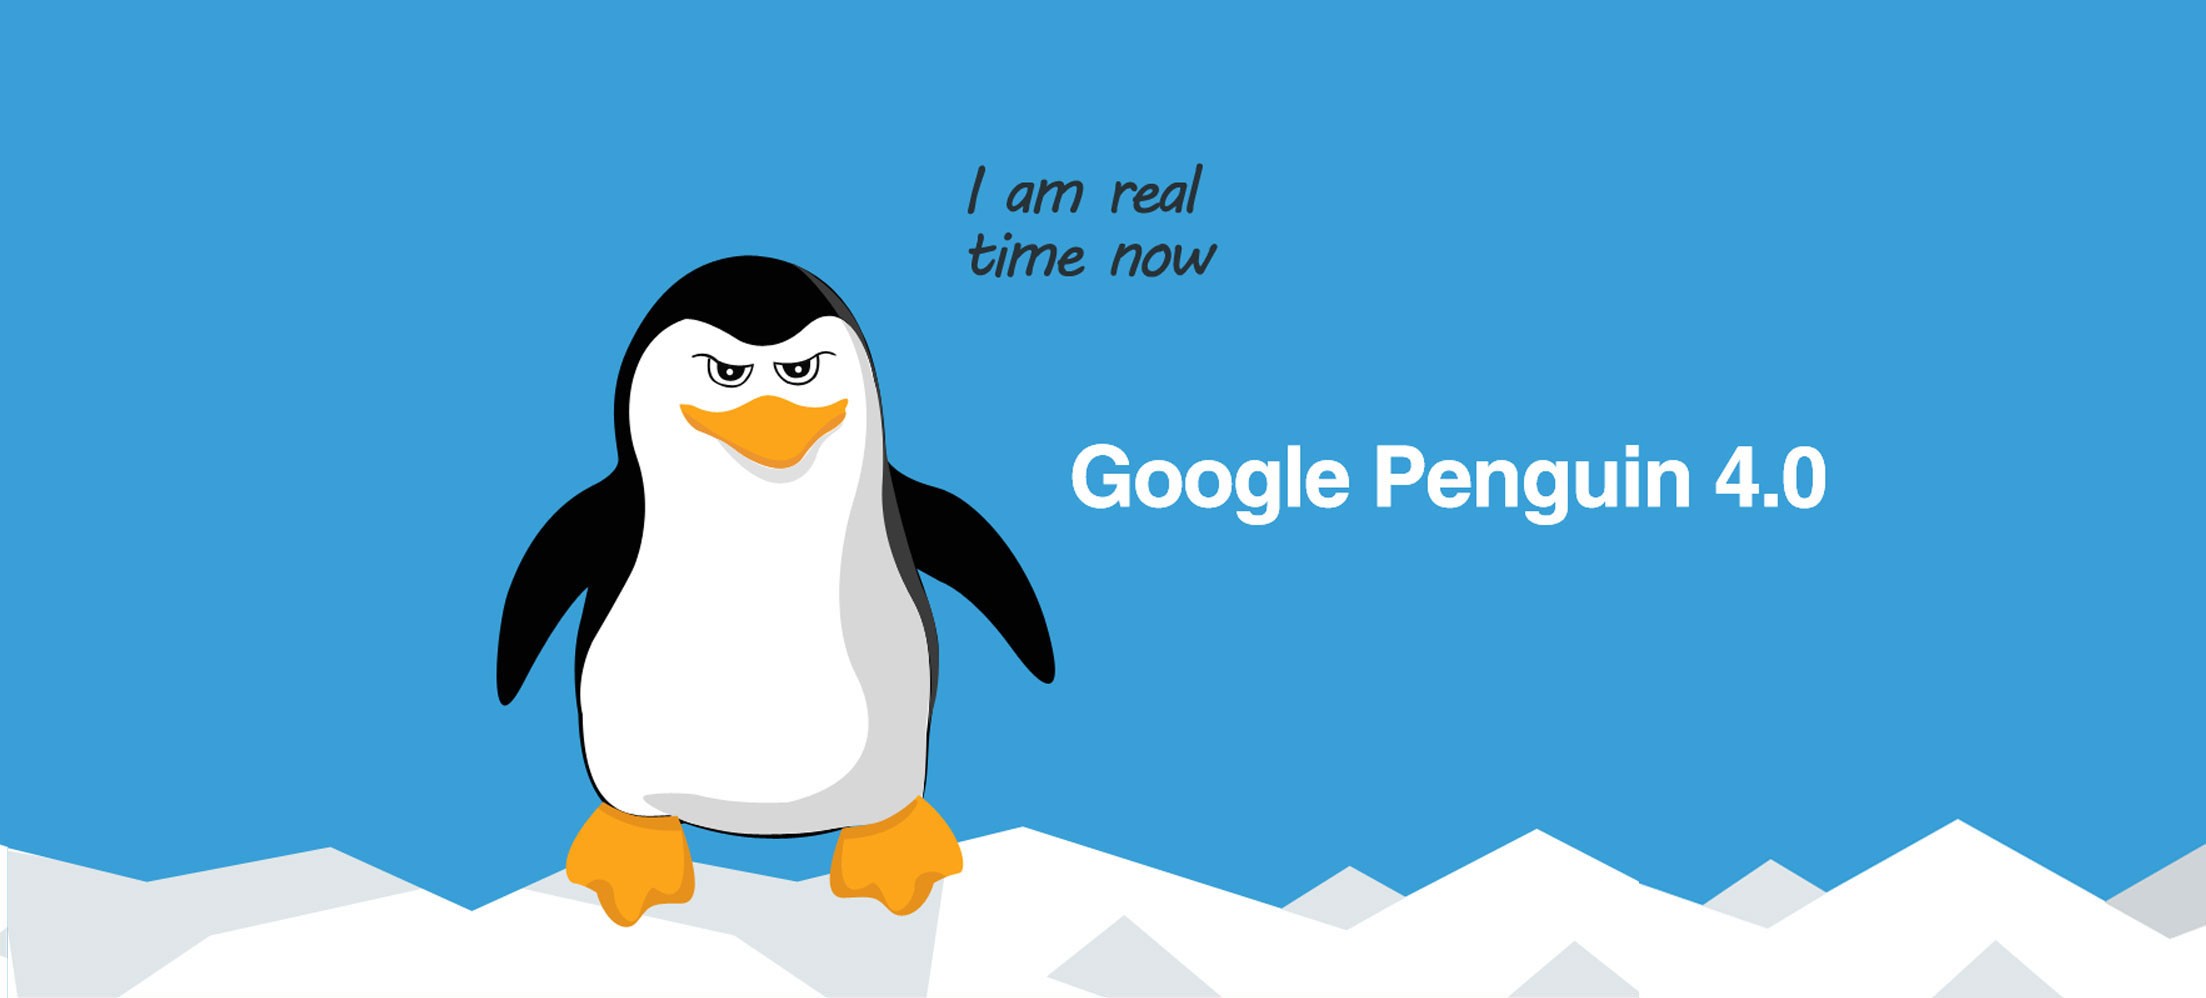 Google-penguin23.jpg